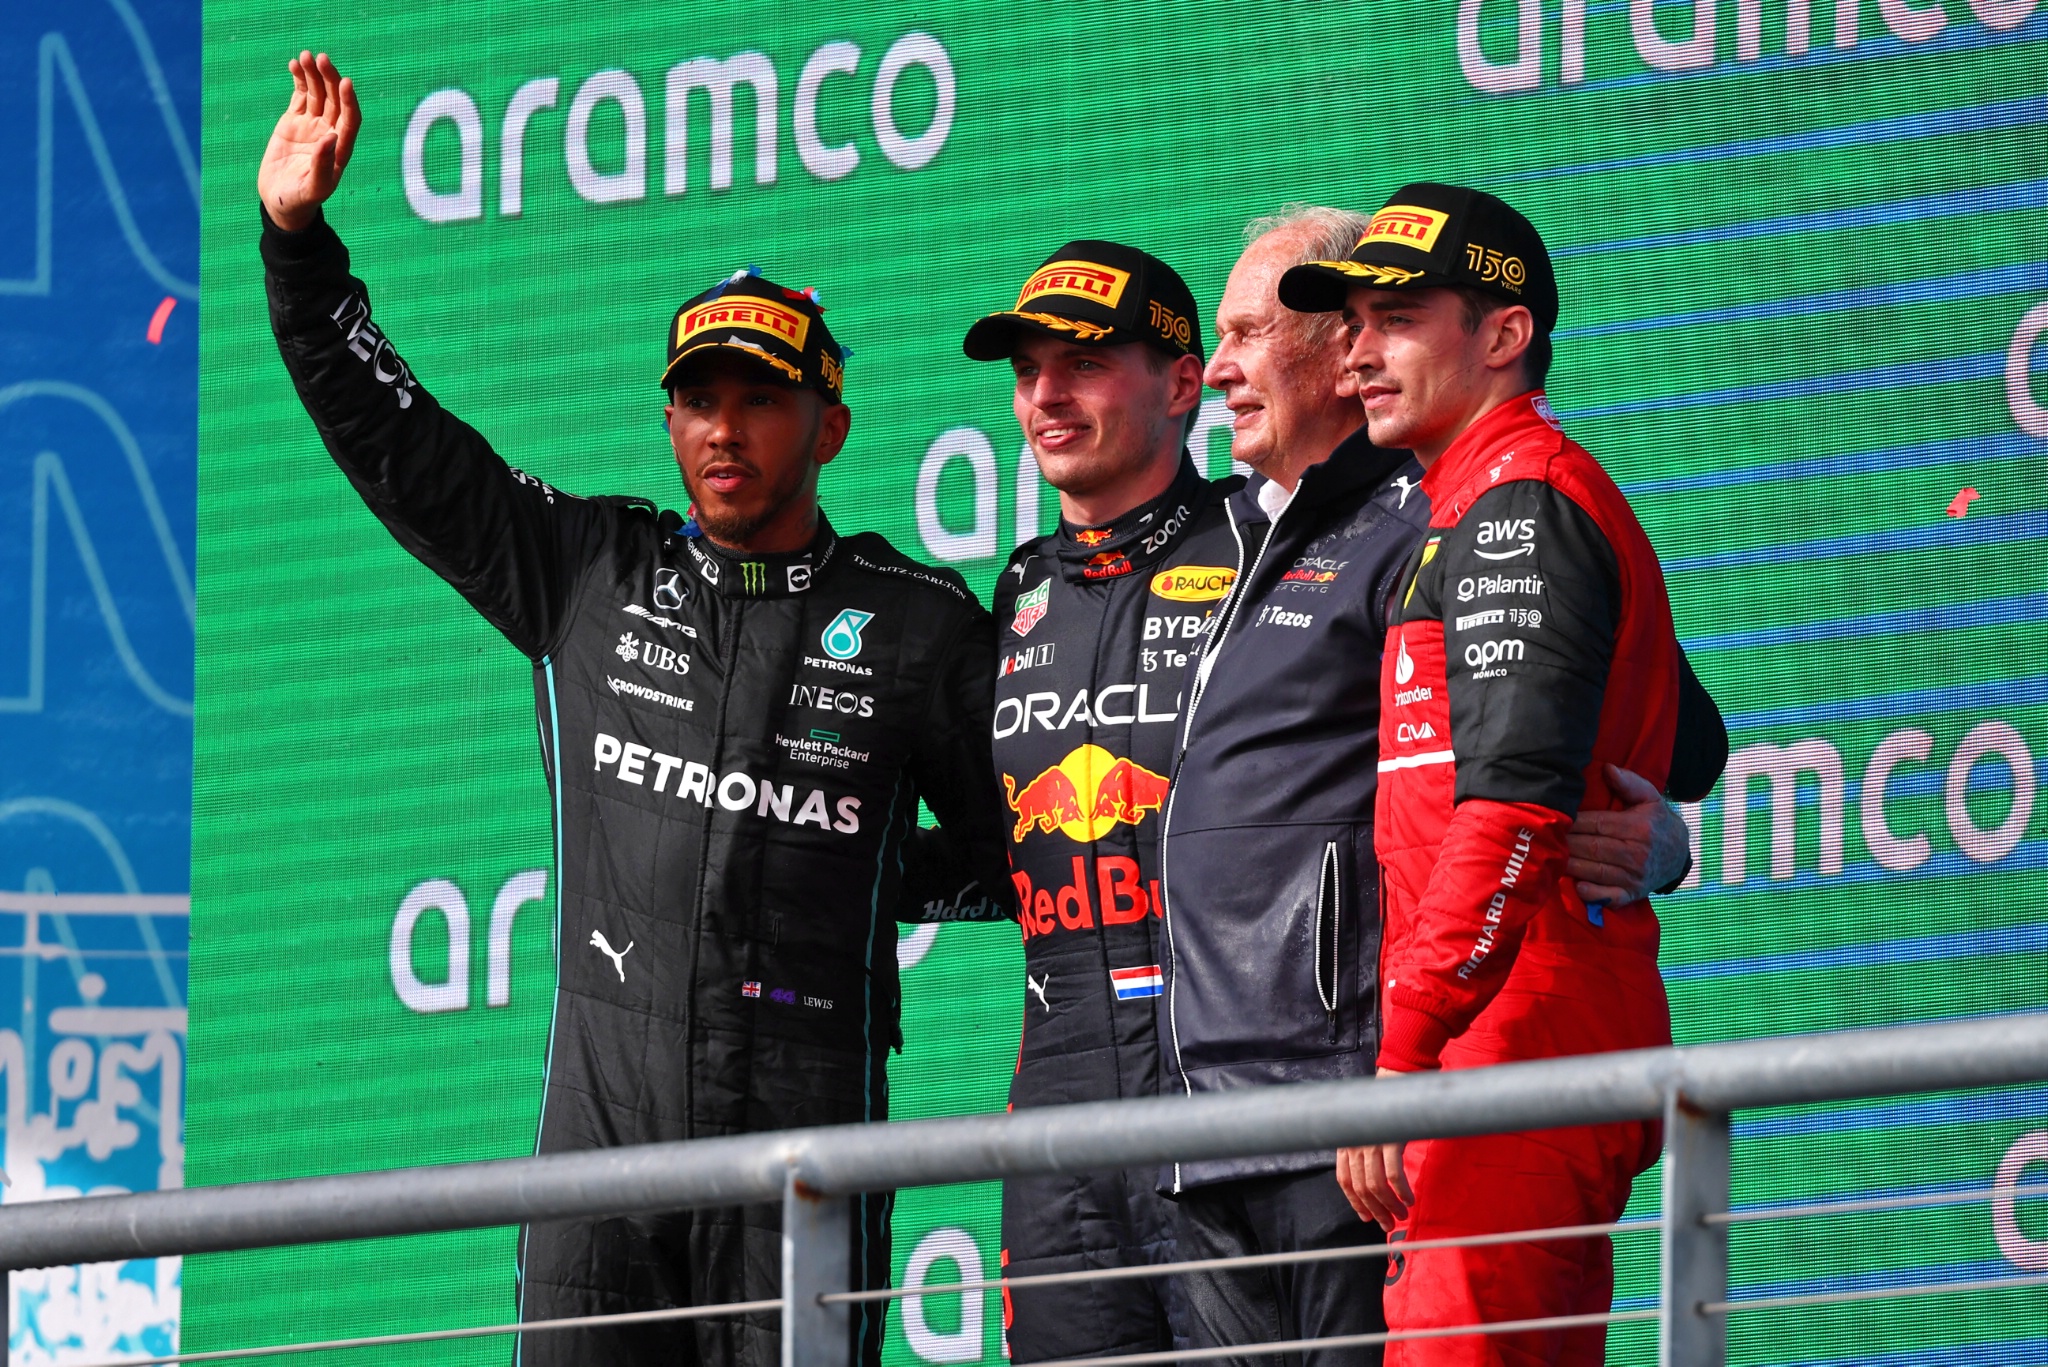 Podium (L ke Kanan): Lewis Hamilton (GBR) Mercedes AMG F1, kedua; Max Verstappen (NLD) Red Bull Racing, pemenang balapan; Dr